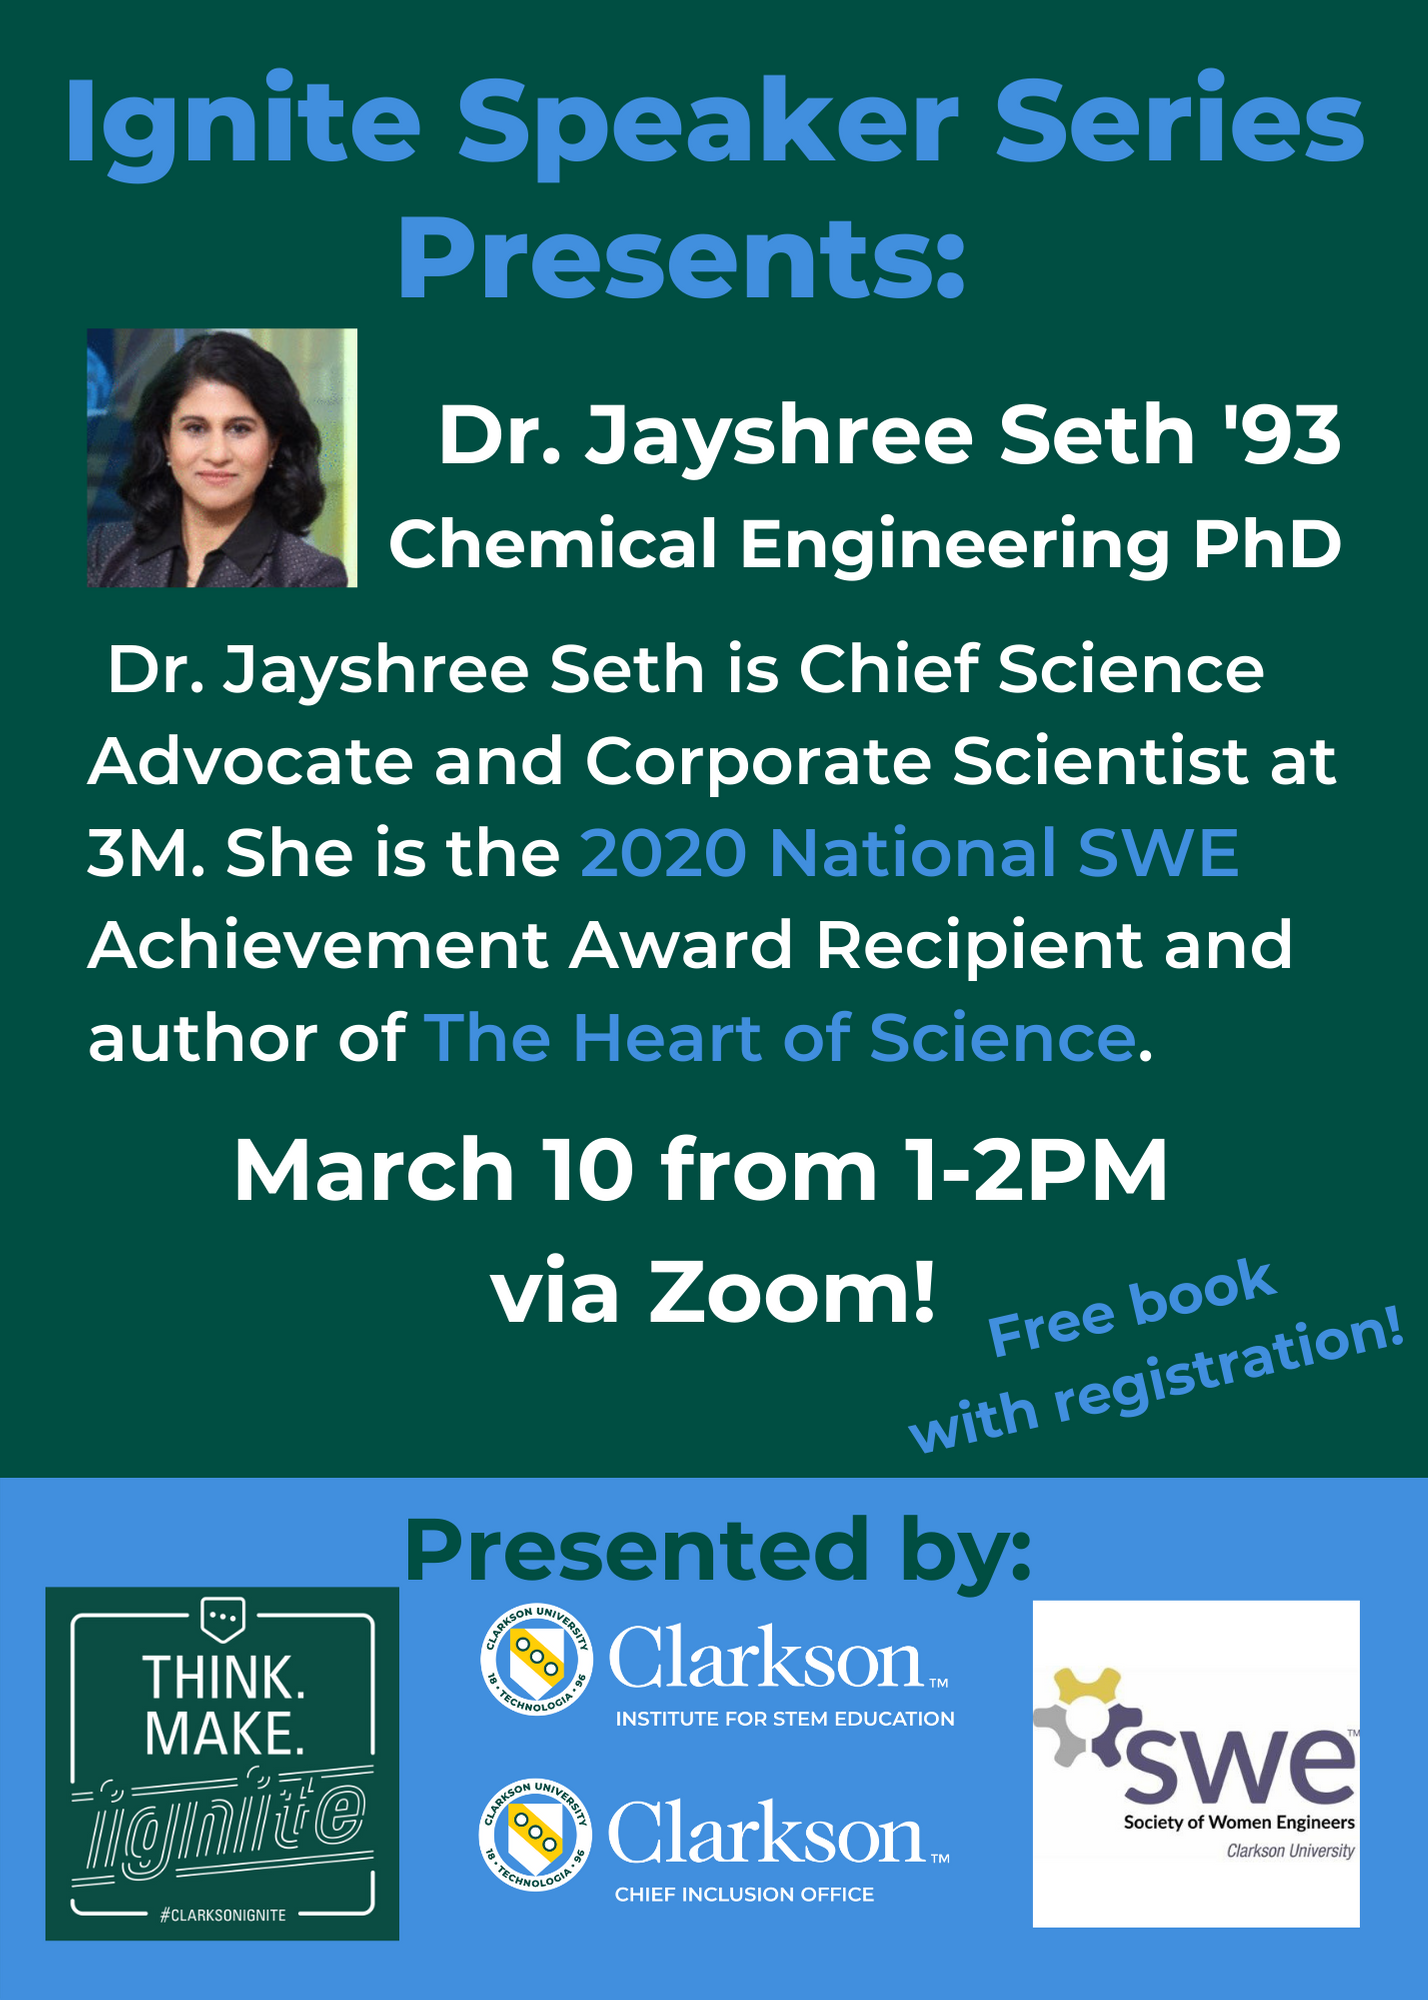 Ignite Speaker Series Presents: Dr. Jayshree Seth ’93